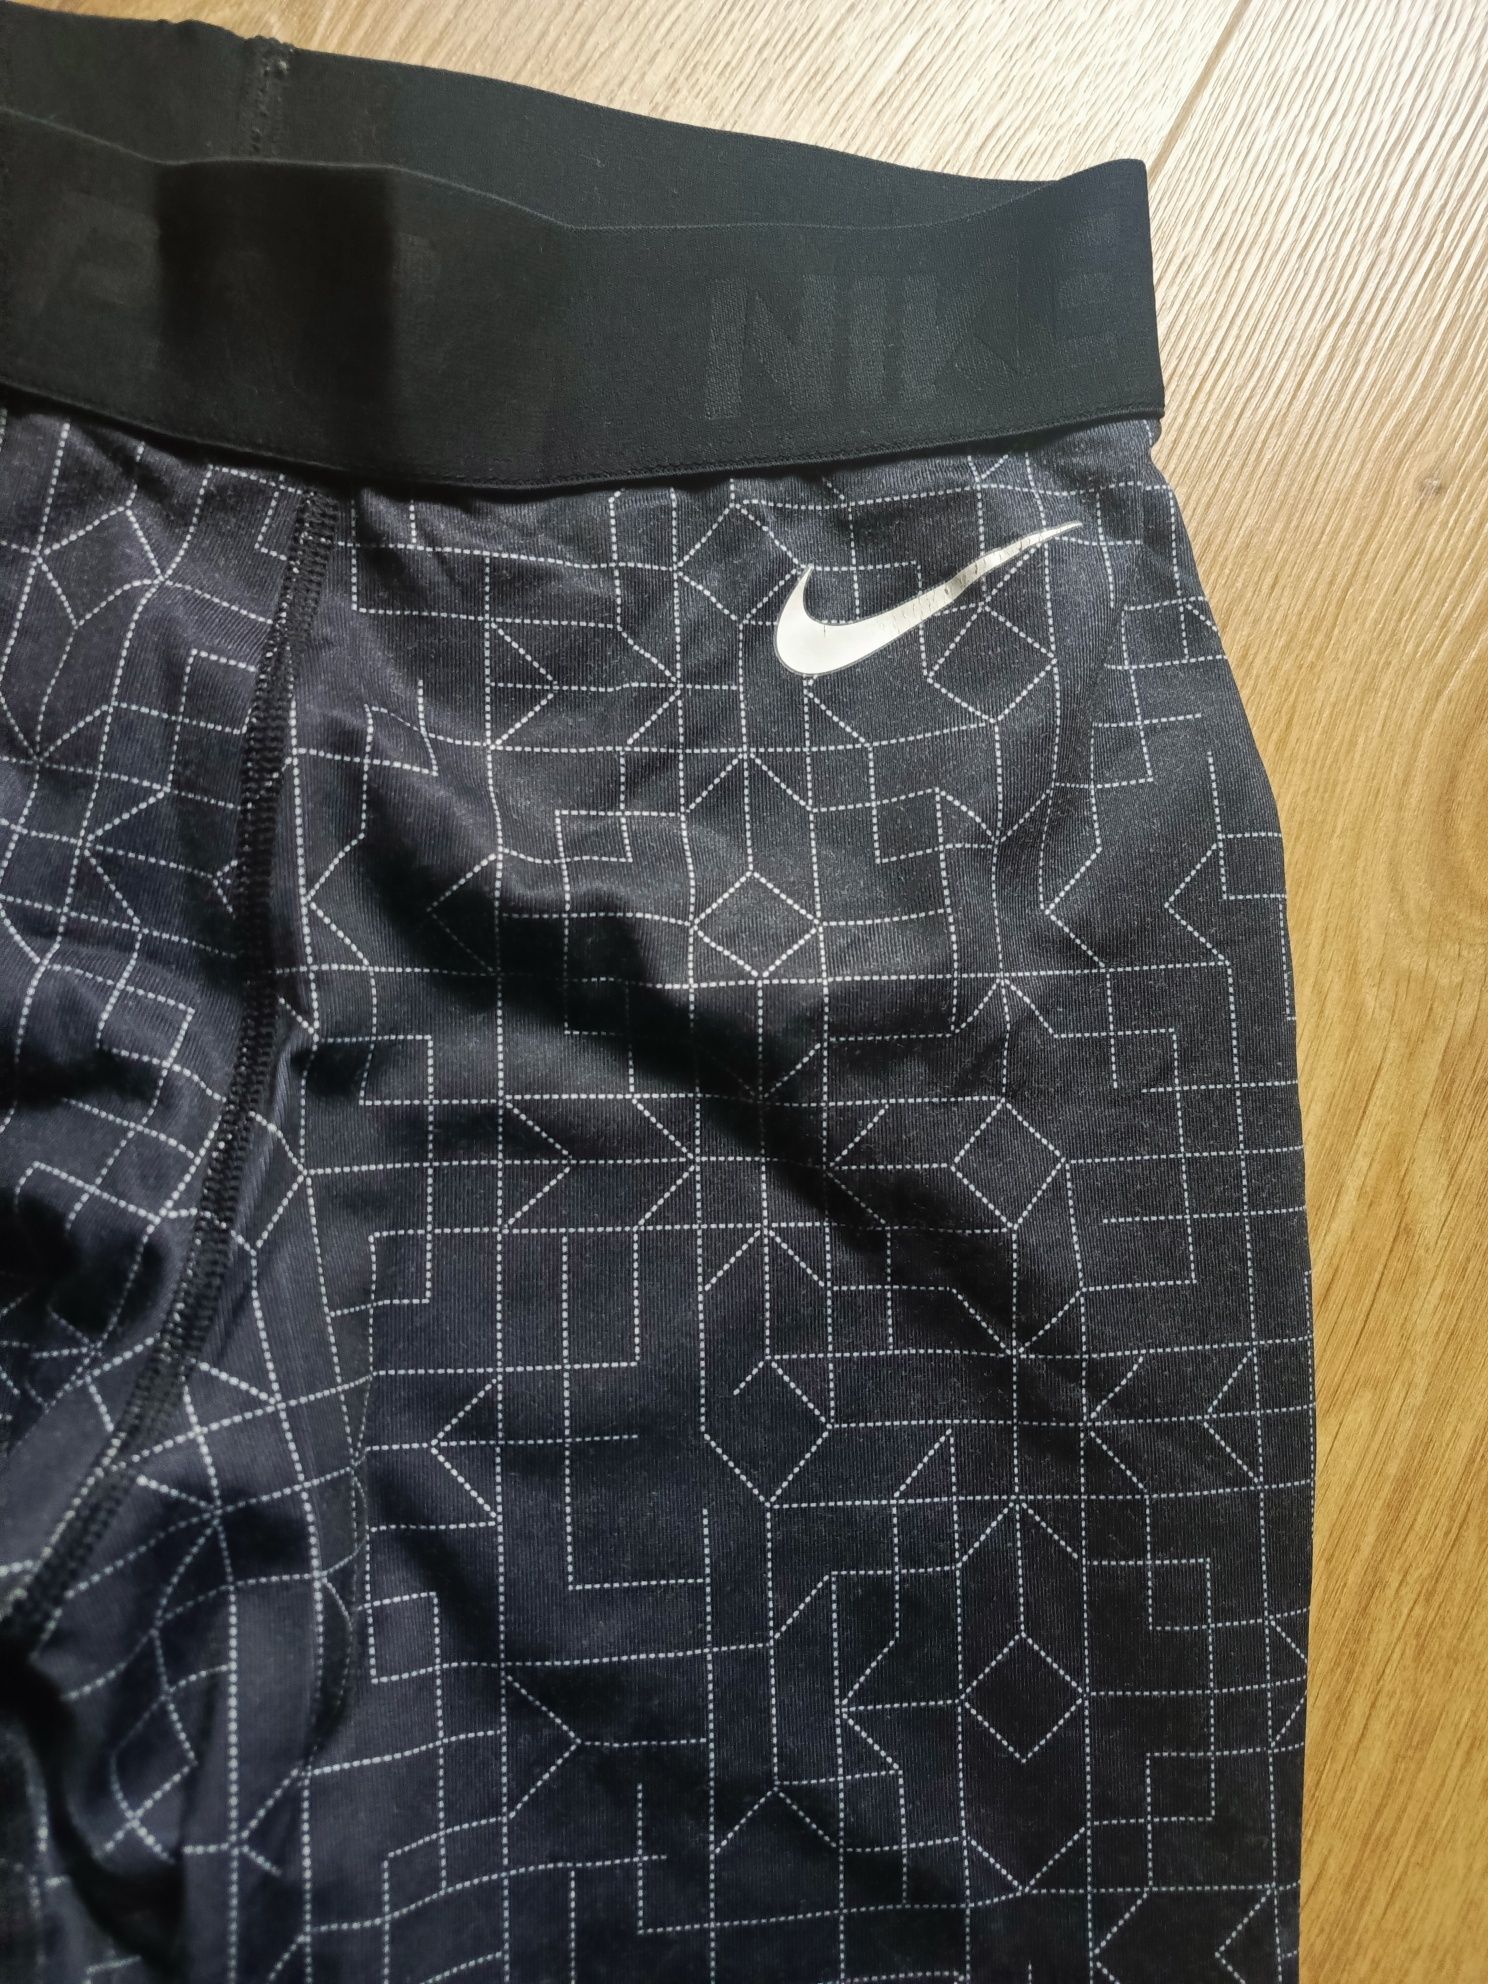 Leginsy Nike we wzory